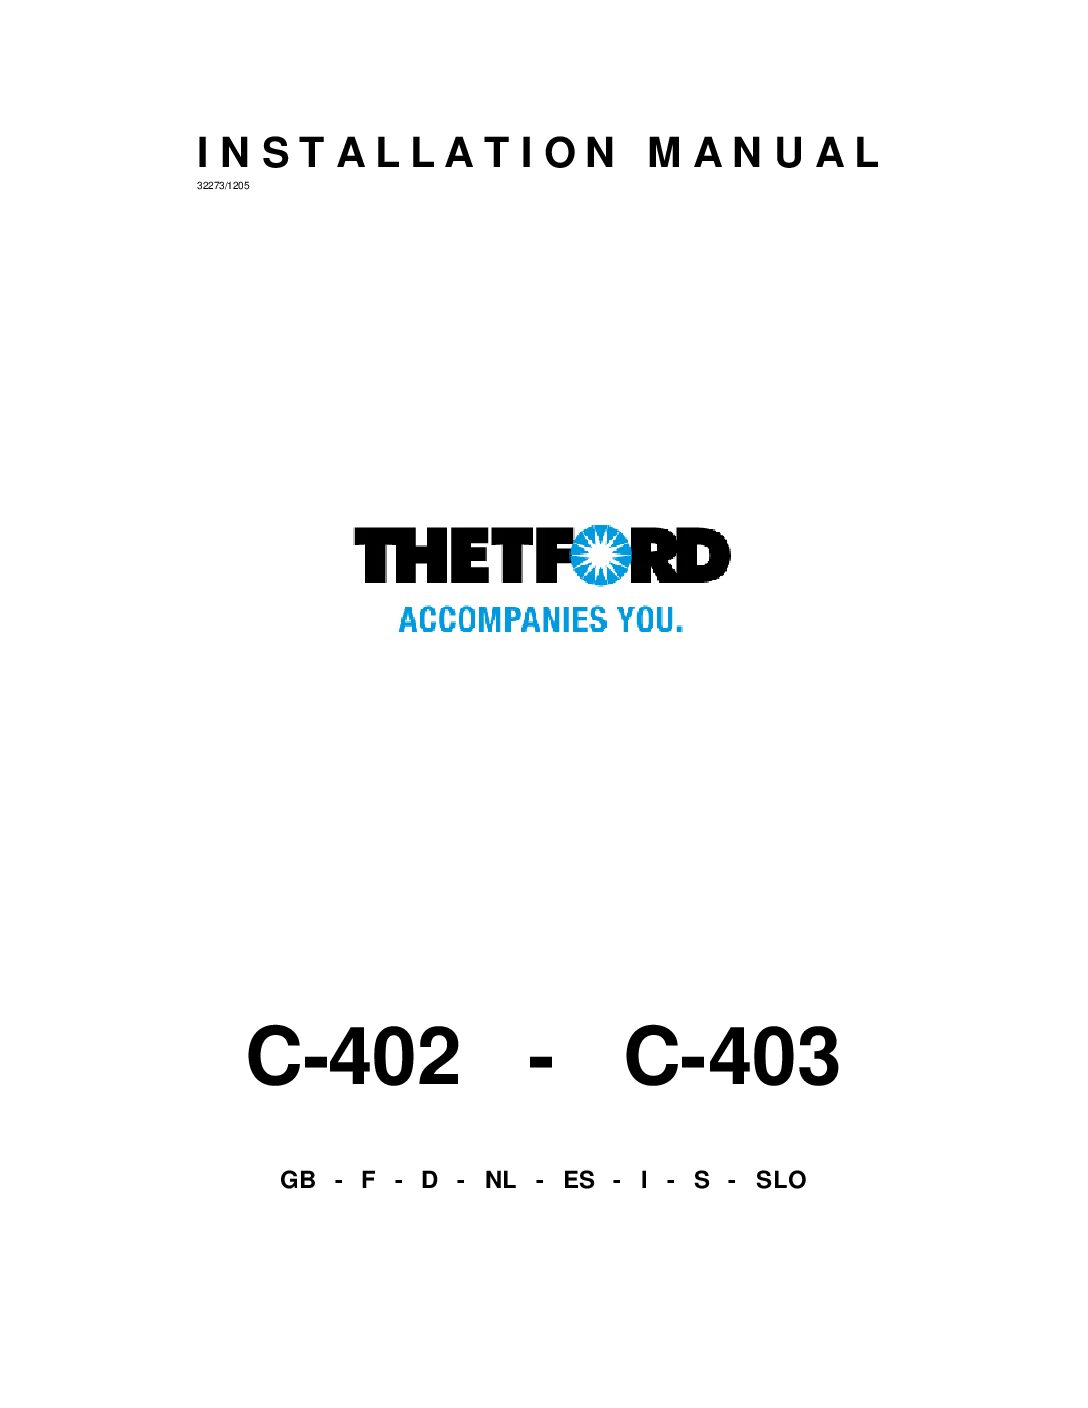 Thetford C400 Bedienungsanleitung